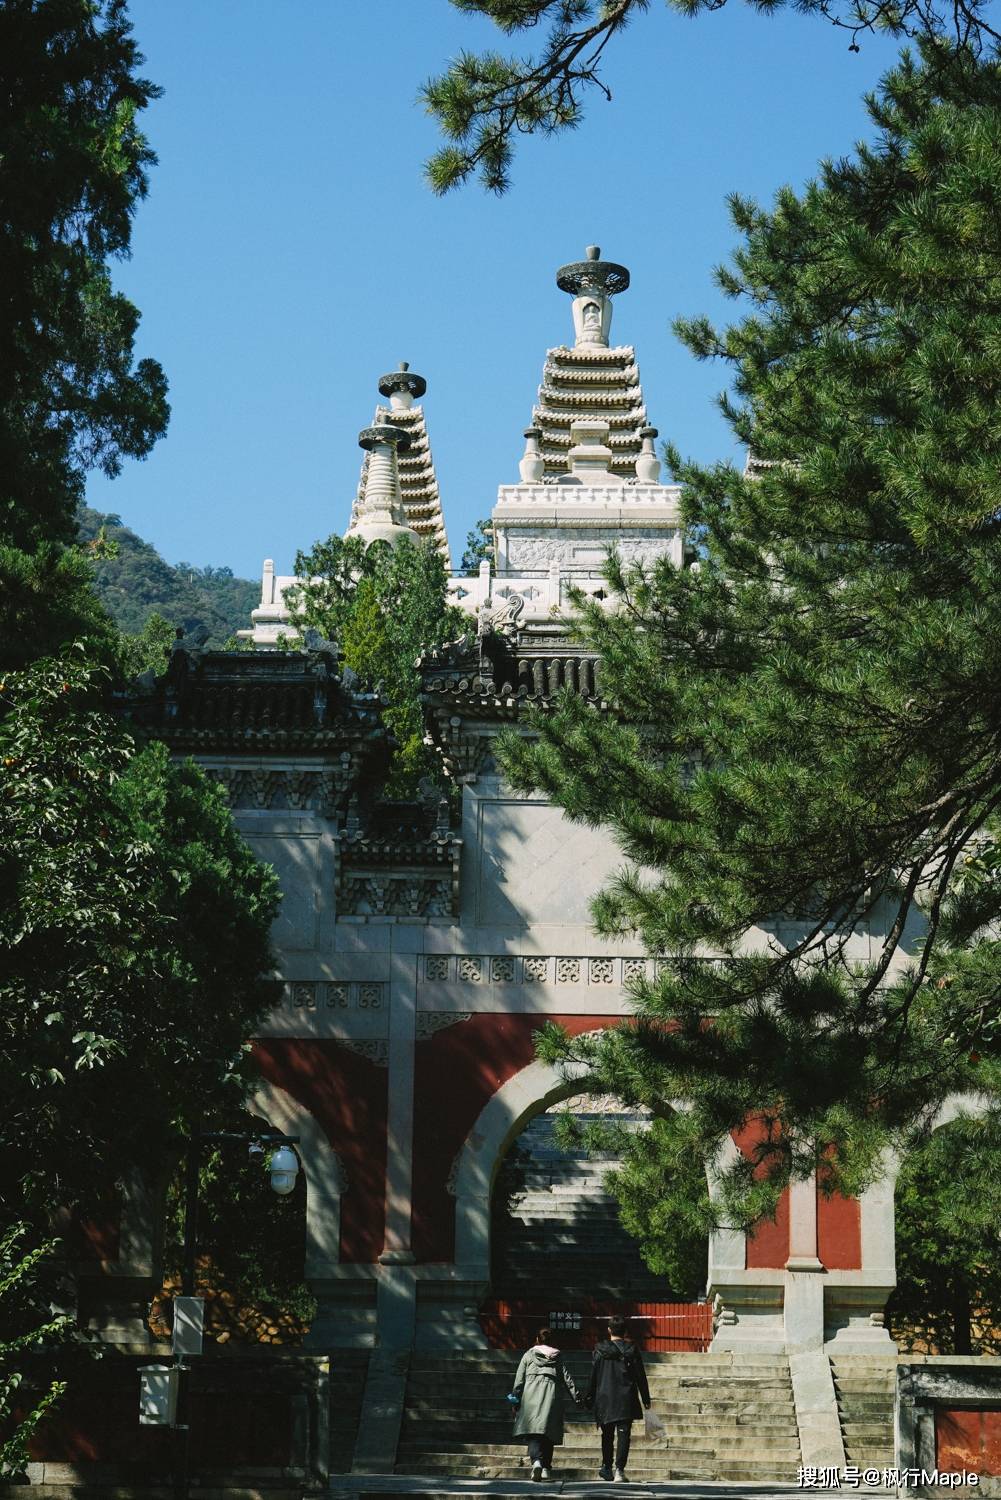 分别是 北京真觉寺(五塔寺)的金刚宝座塔,北京香山碧云寺的金刚宝座塔